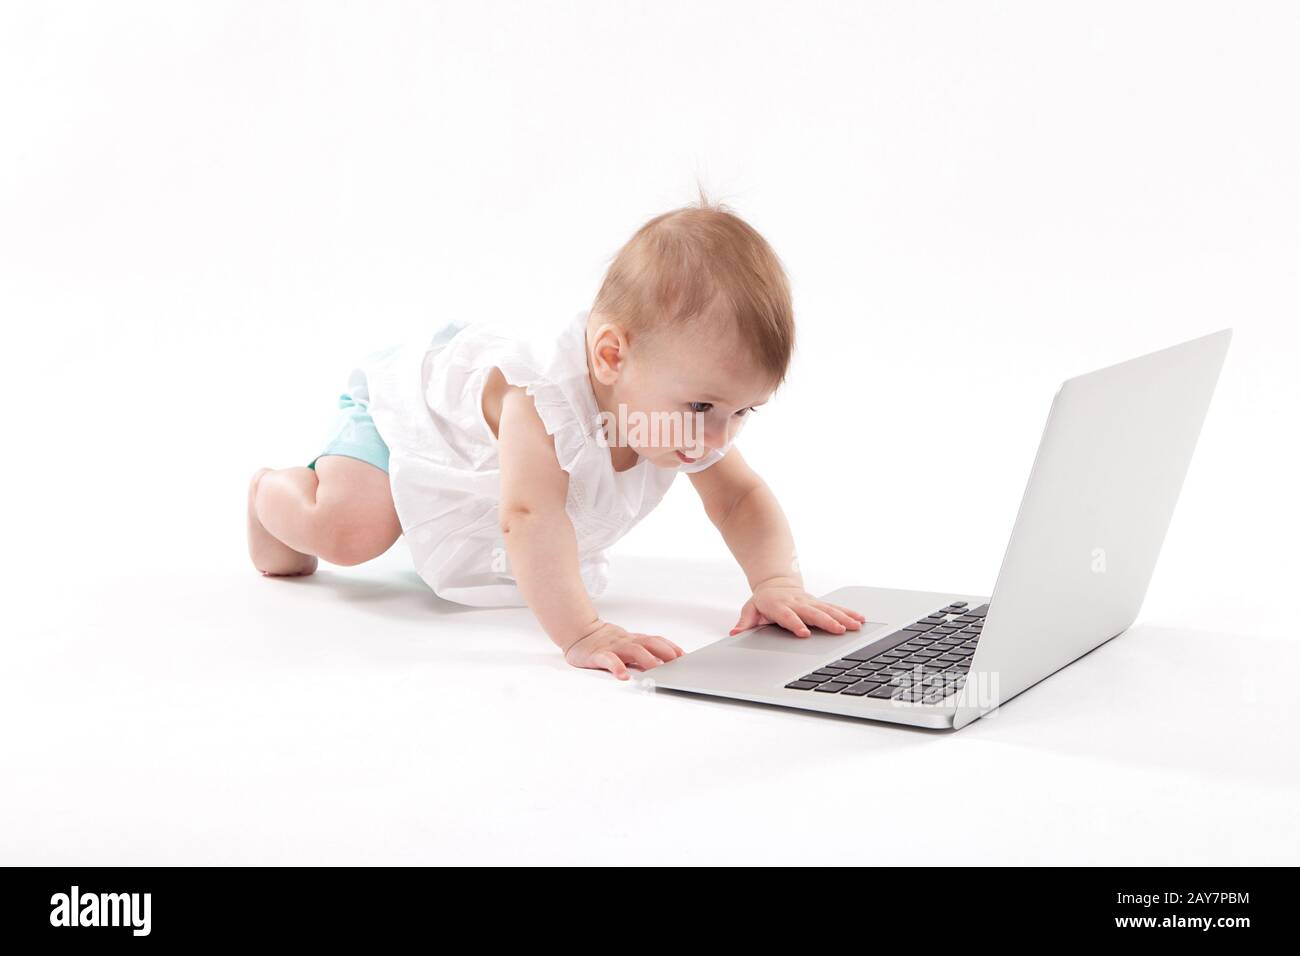 Curioso sorridente bambino seduto vicino al portatile su un backgro bianco Foto Stock